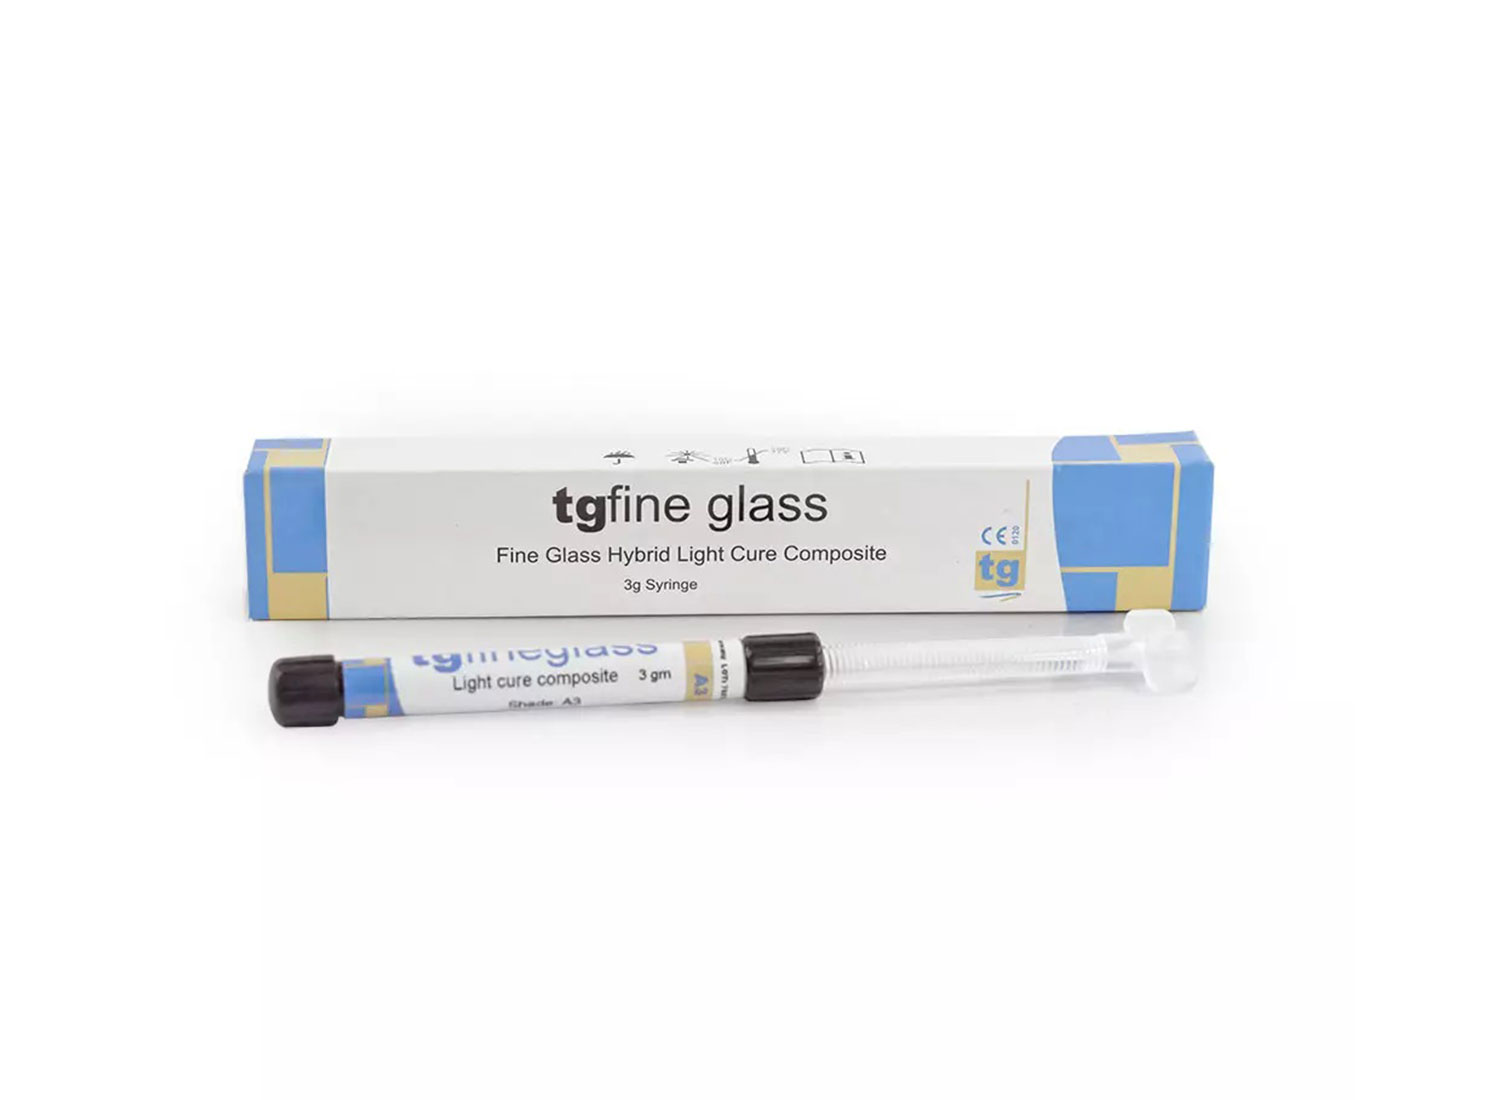 کامپوزیت میکروهیبرید لایت کیور tgfine glass سرنگ 3 گرمی برند TG